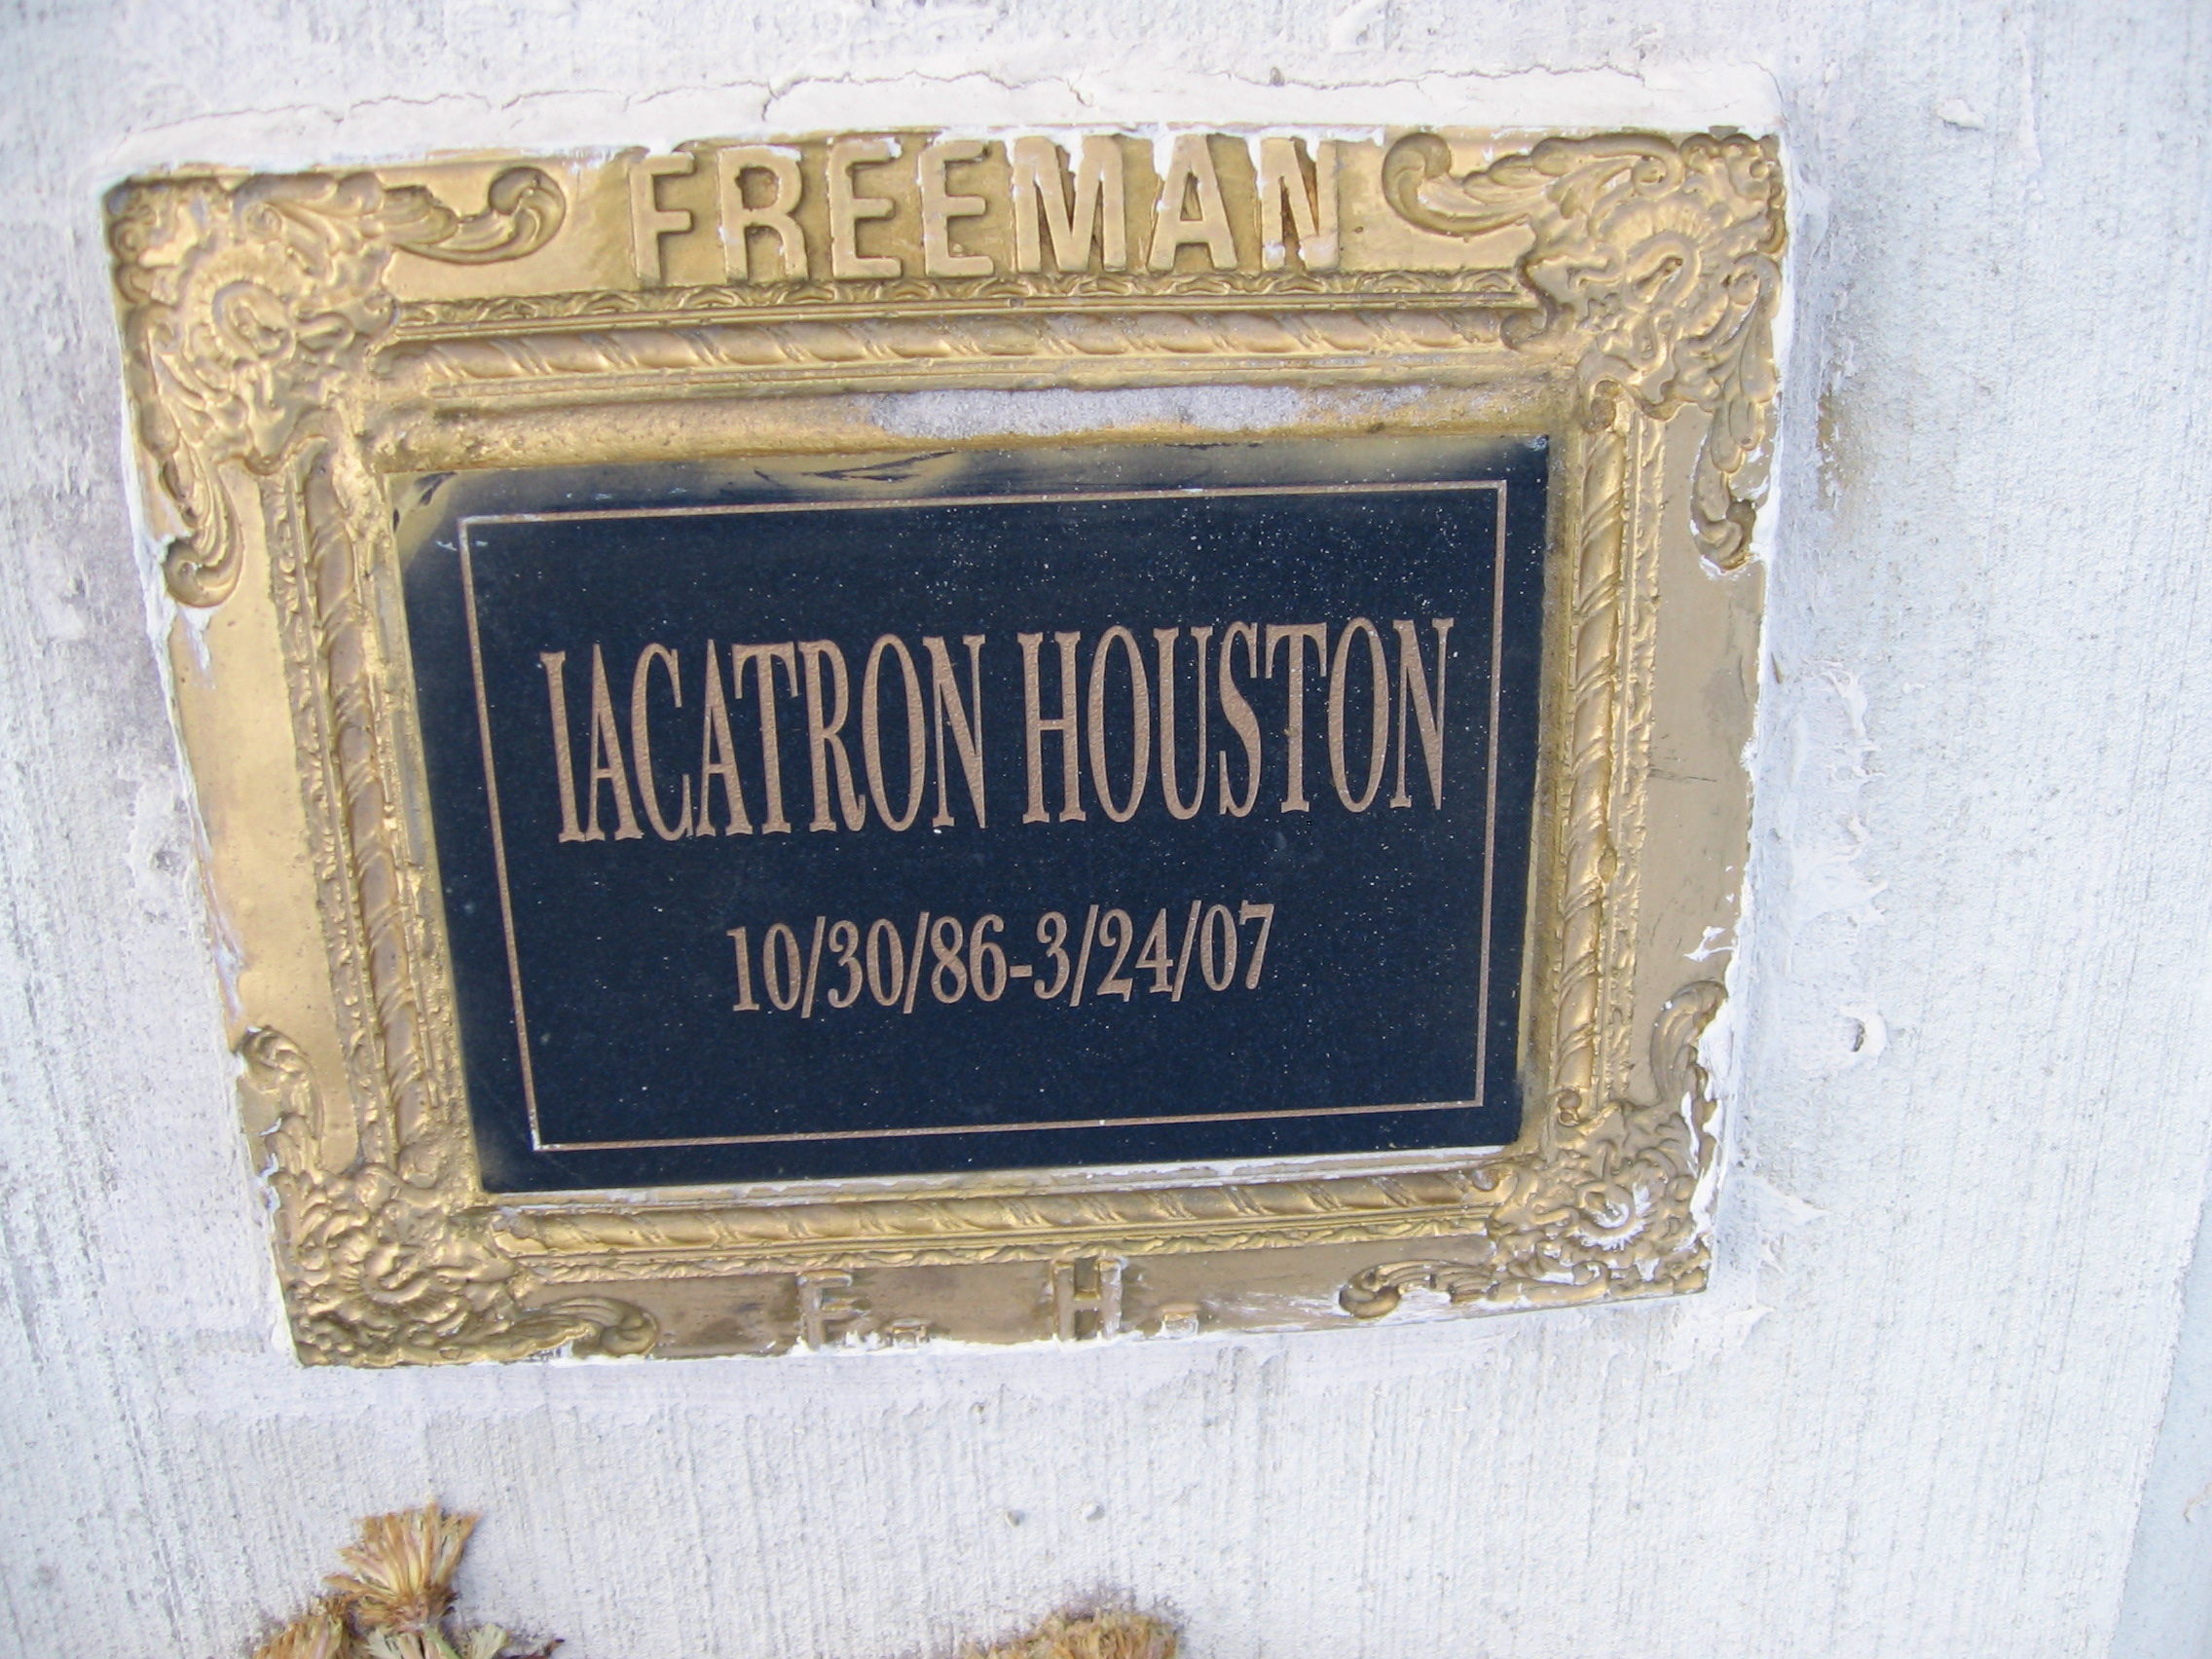 Iacatron Houston